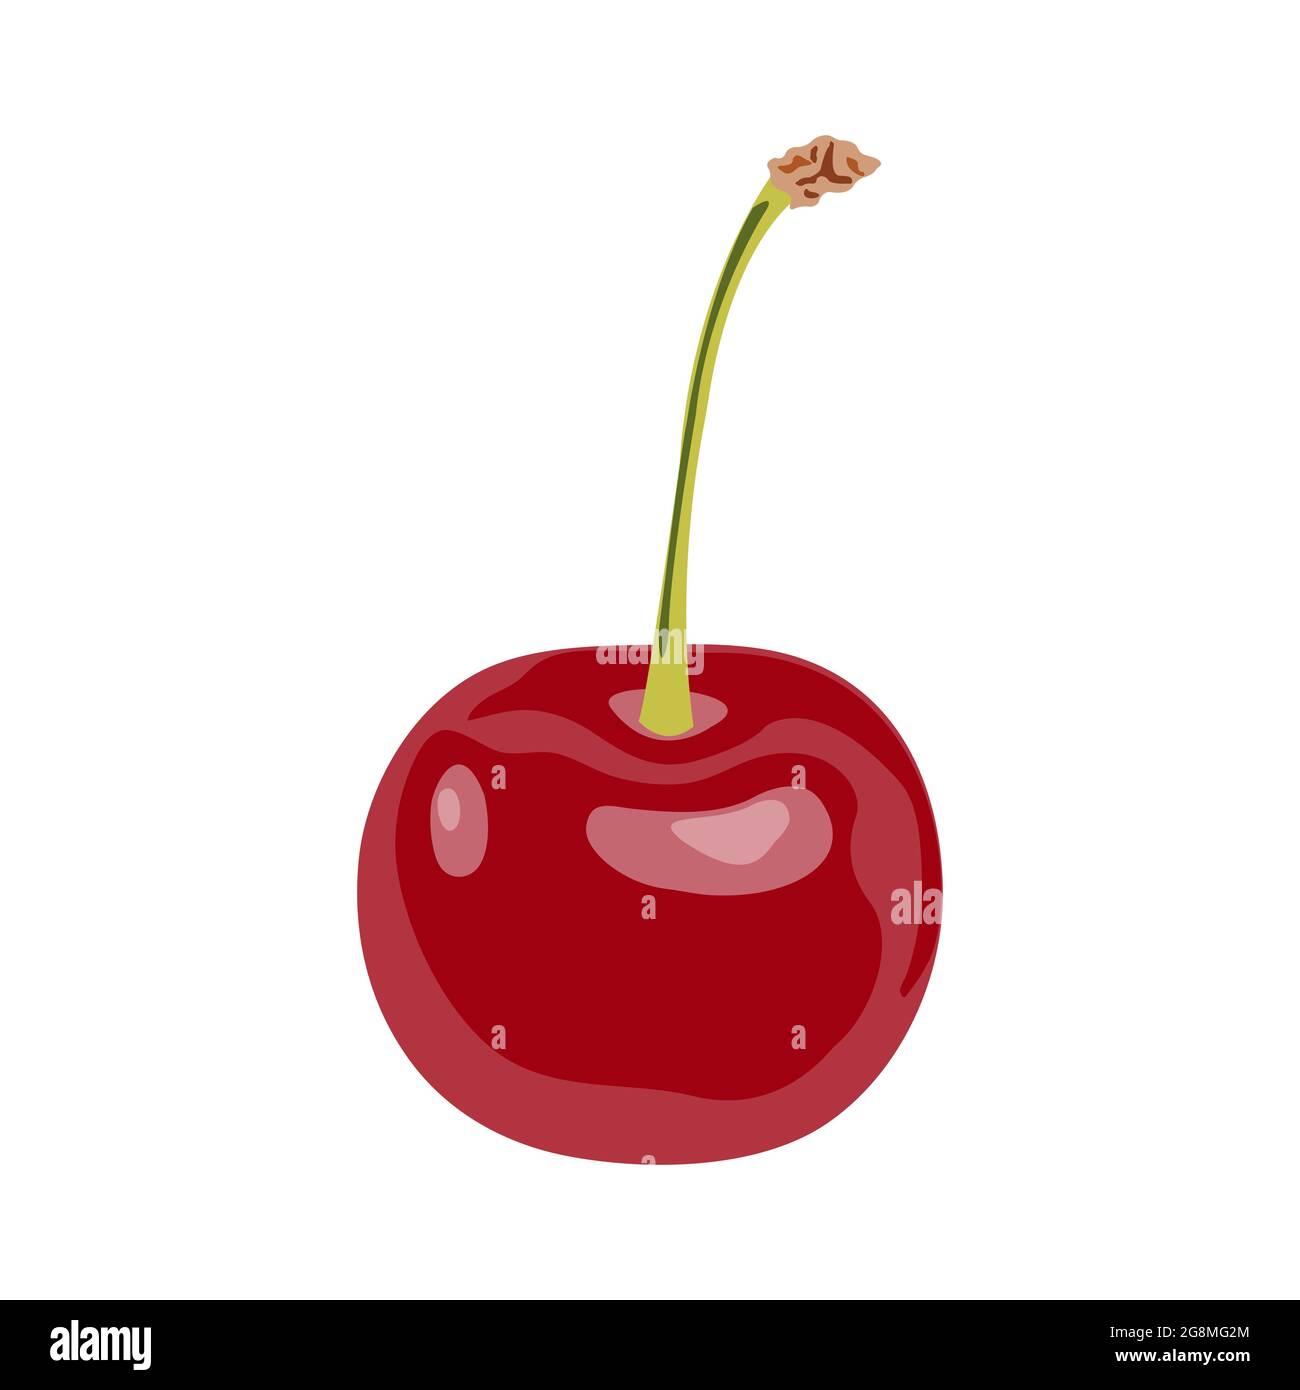 Rouge délicieuse cerise mûre avec un hôte isolé sur un fond blanc. Illustration de cerisier vectoriel. Icône de style dessin animé. Illustration de Vecteur